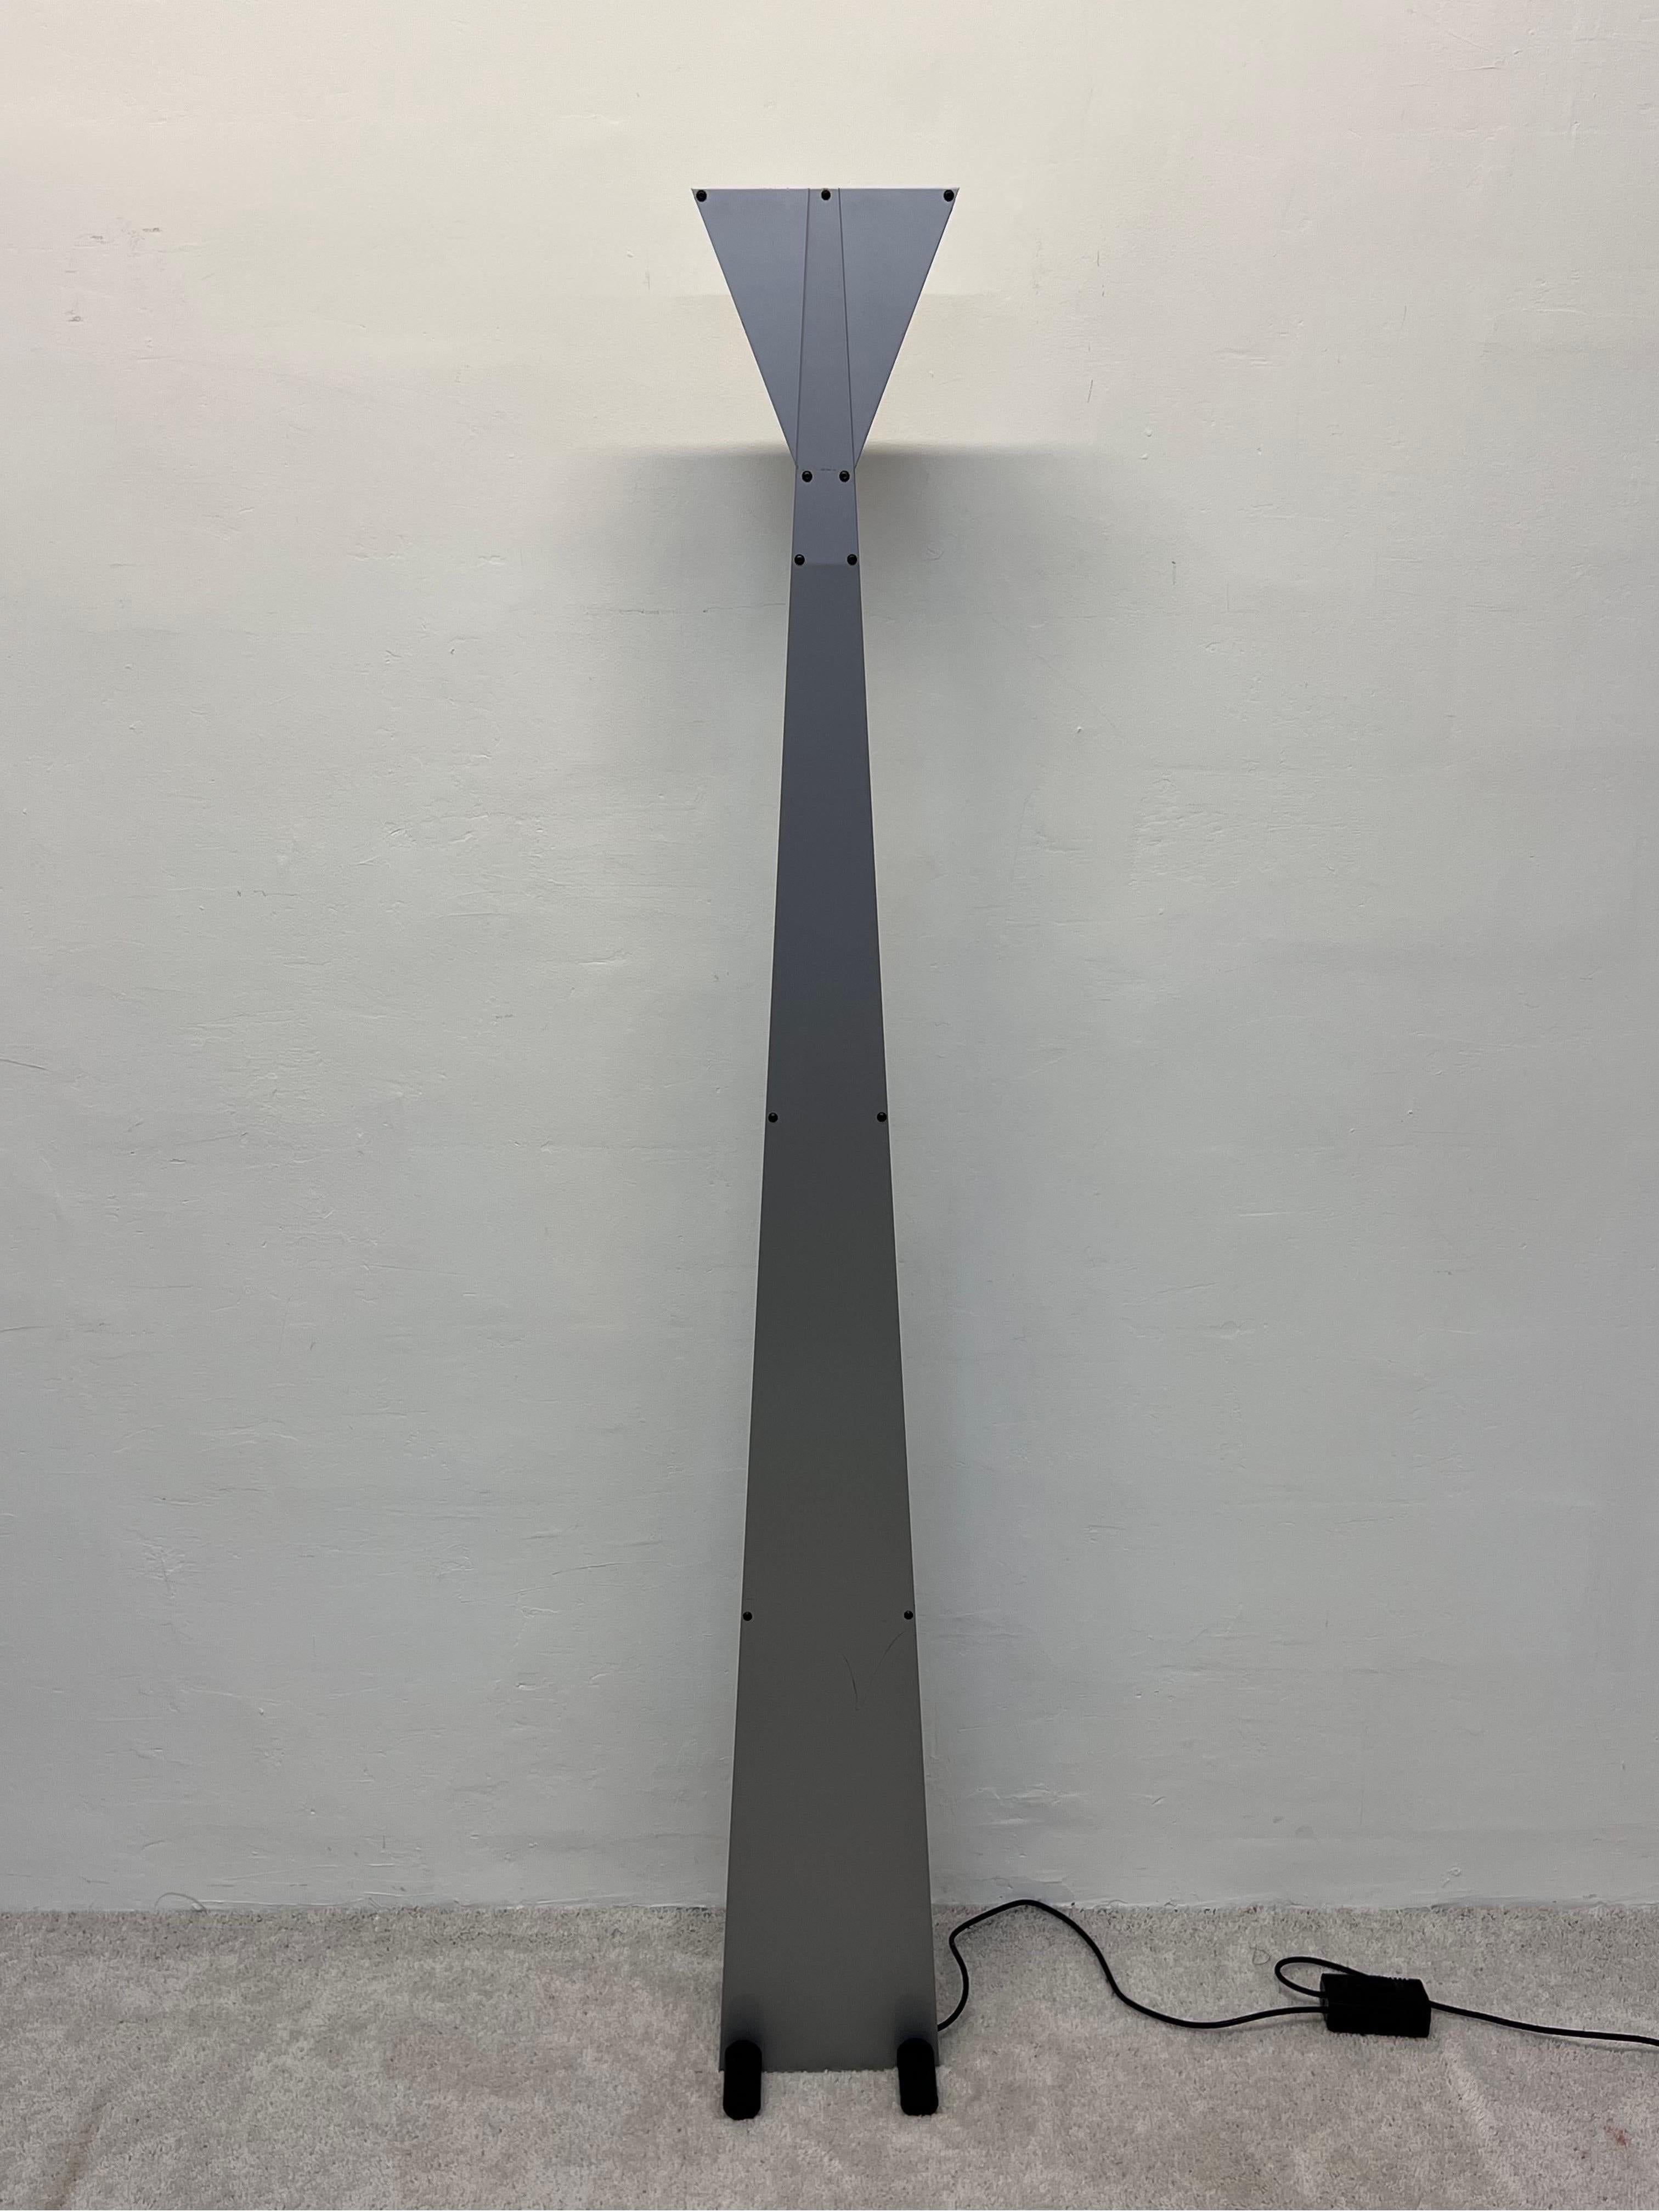 Lampadaire torchère postmoderne des années 1980 avec base en acier noir, support en acier gris et diffuseurs latéraux en verre bleu. La commande au pied en ligne permet de varier l'intensité de l'ampoule halogène.